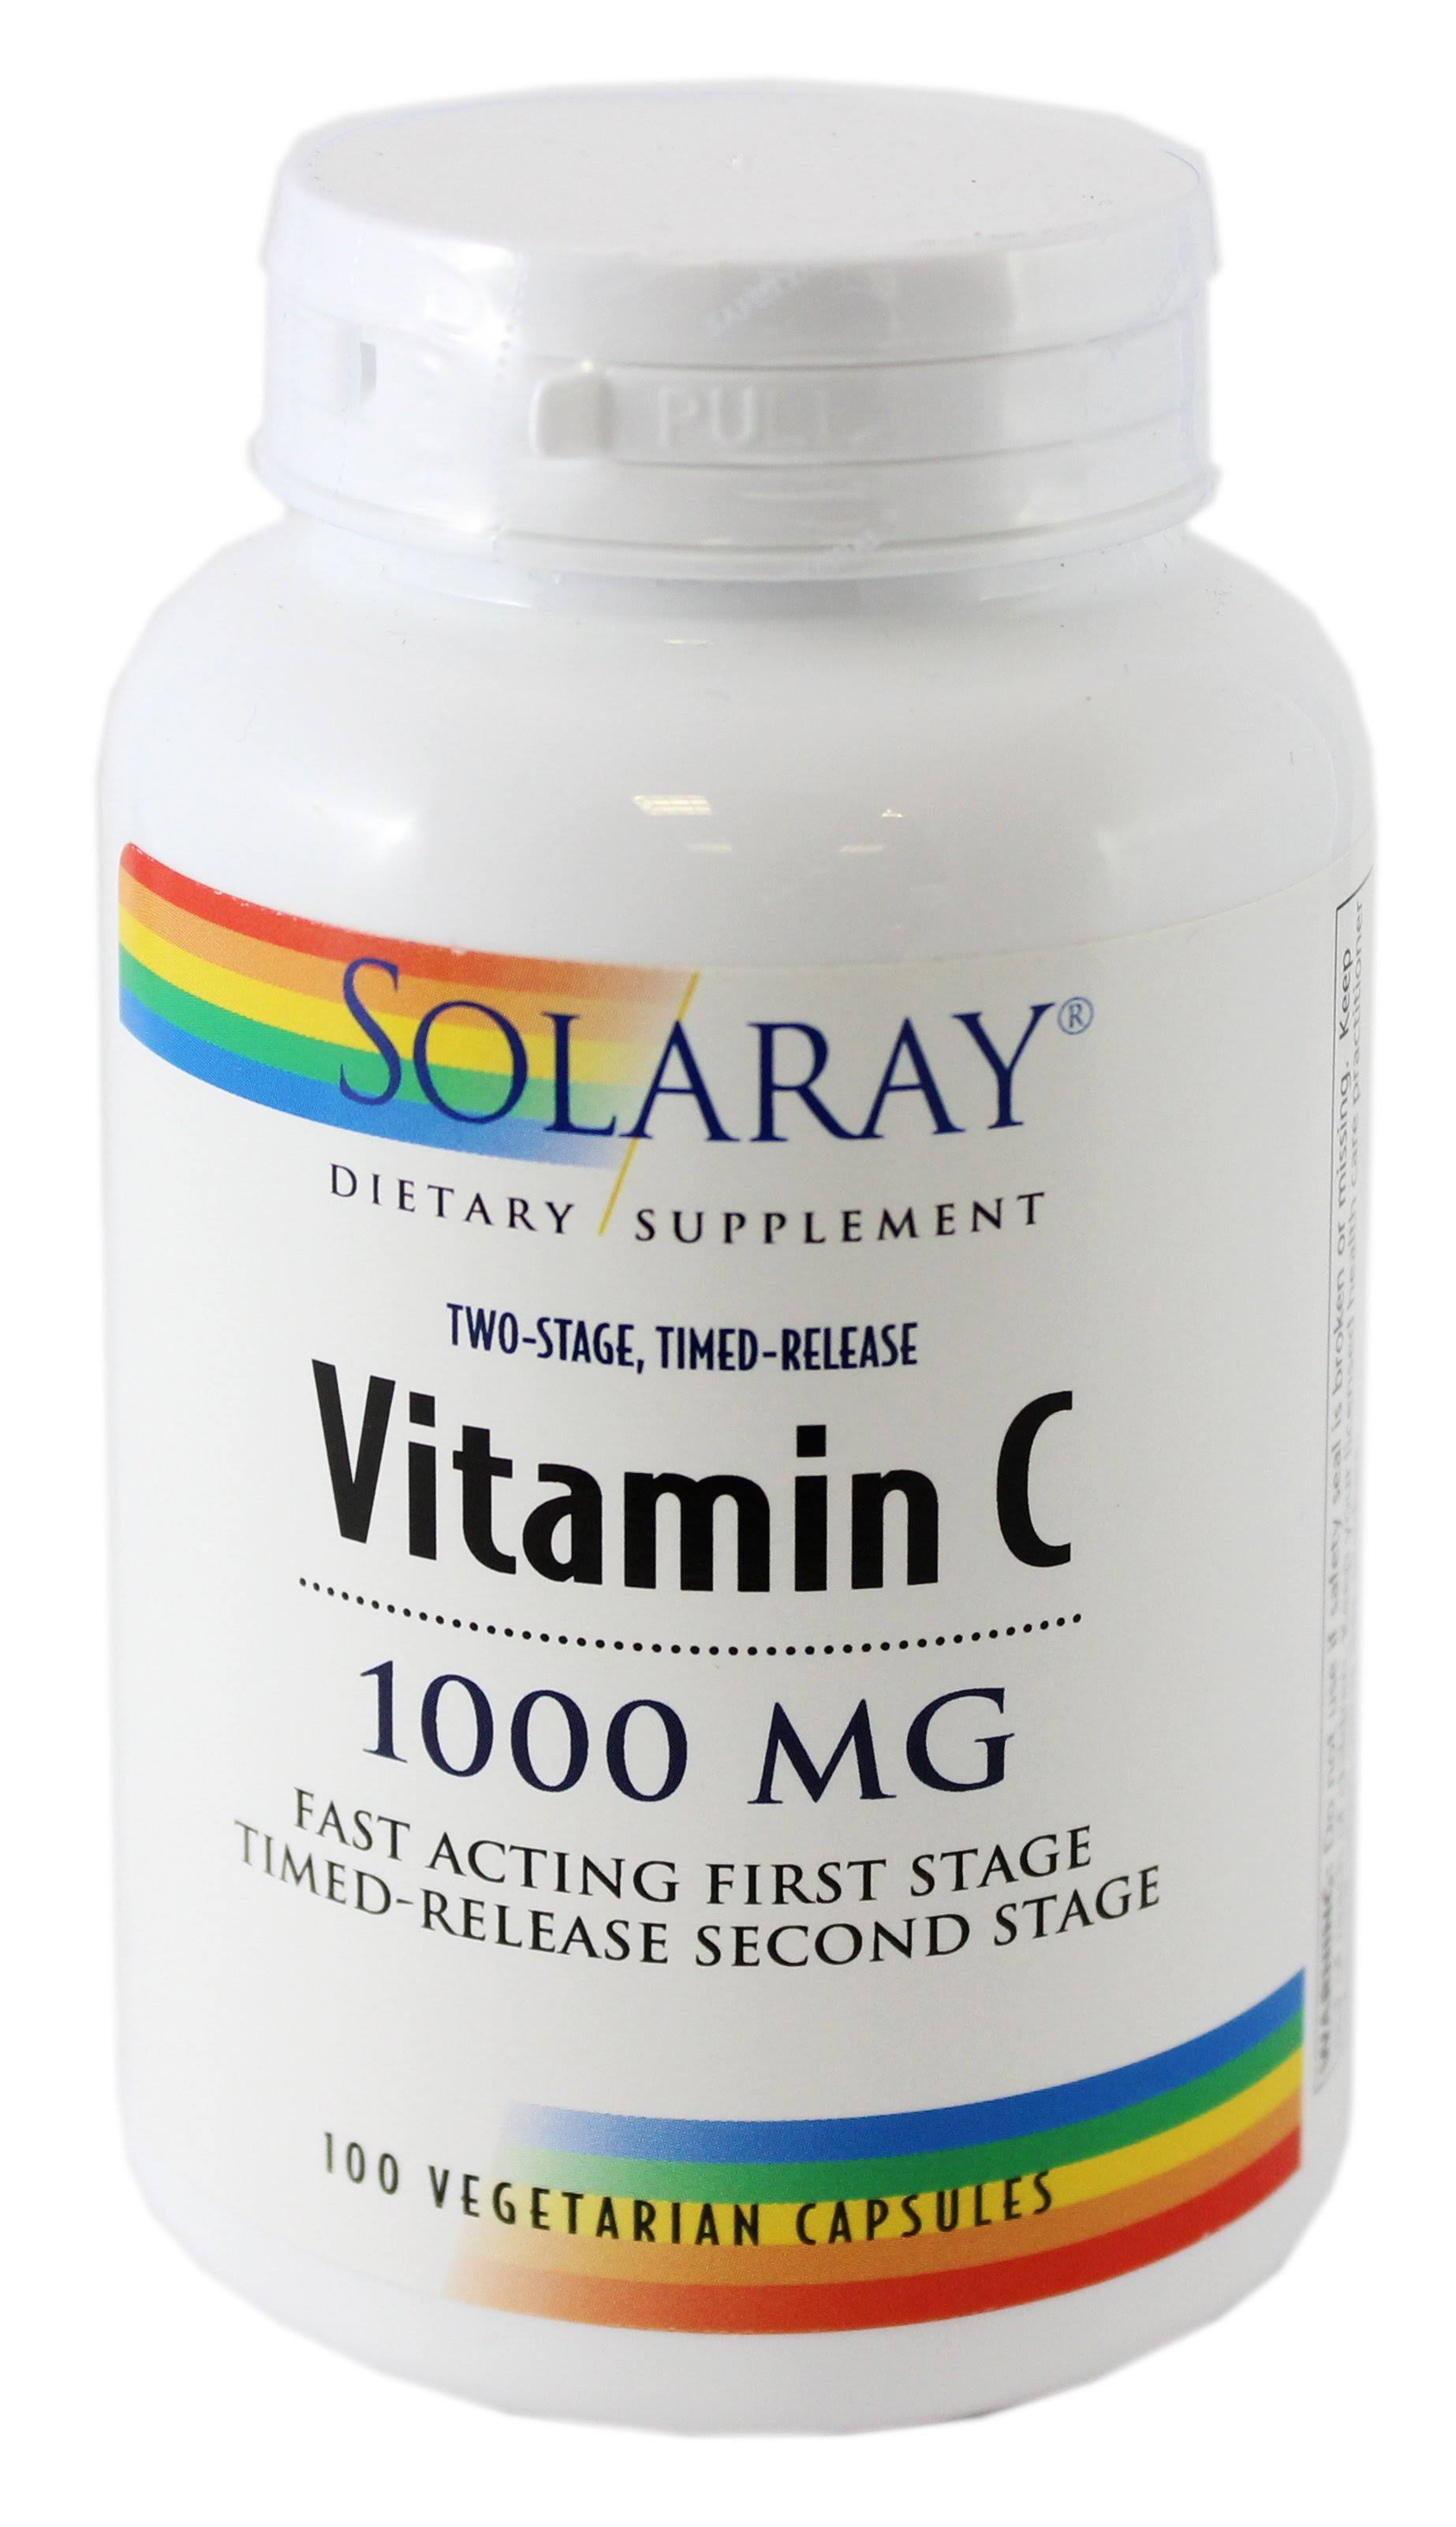 Solaray Vitamin C Dietary Supplement - 1000mg, 100 Vegetarian Capsules